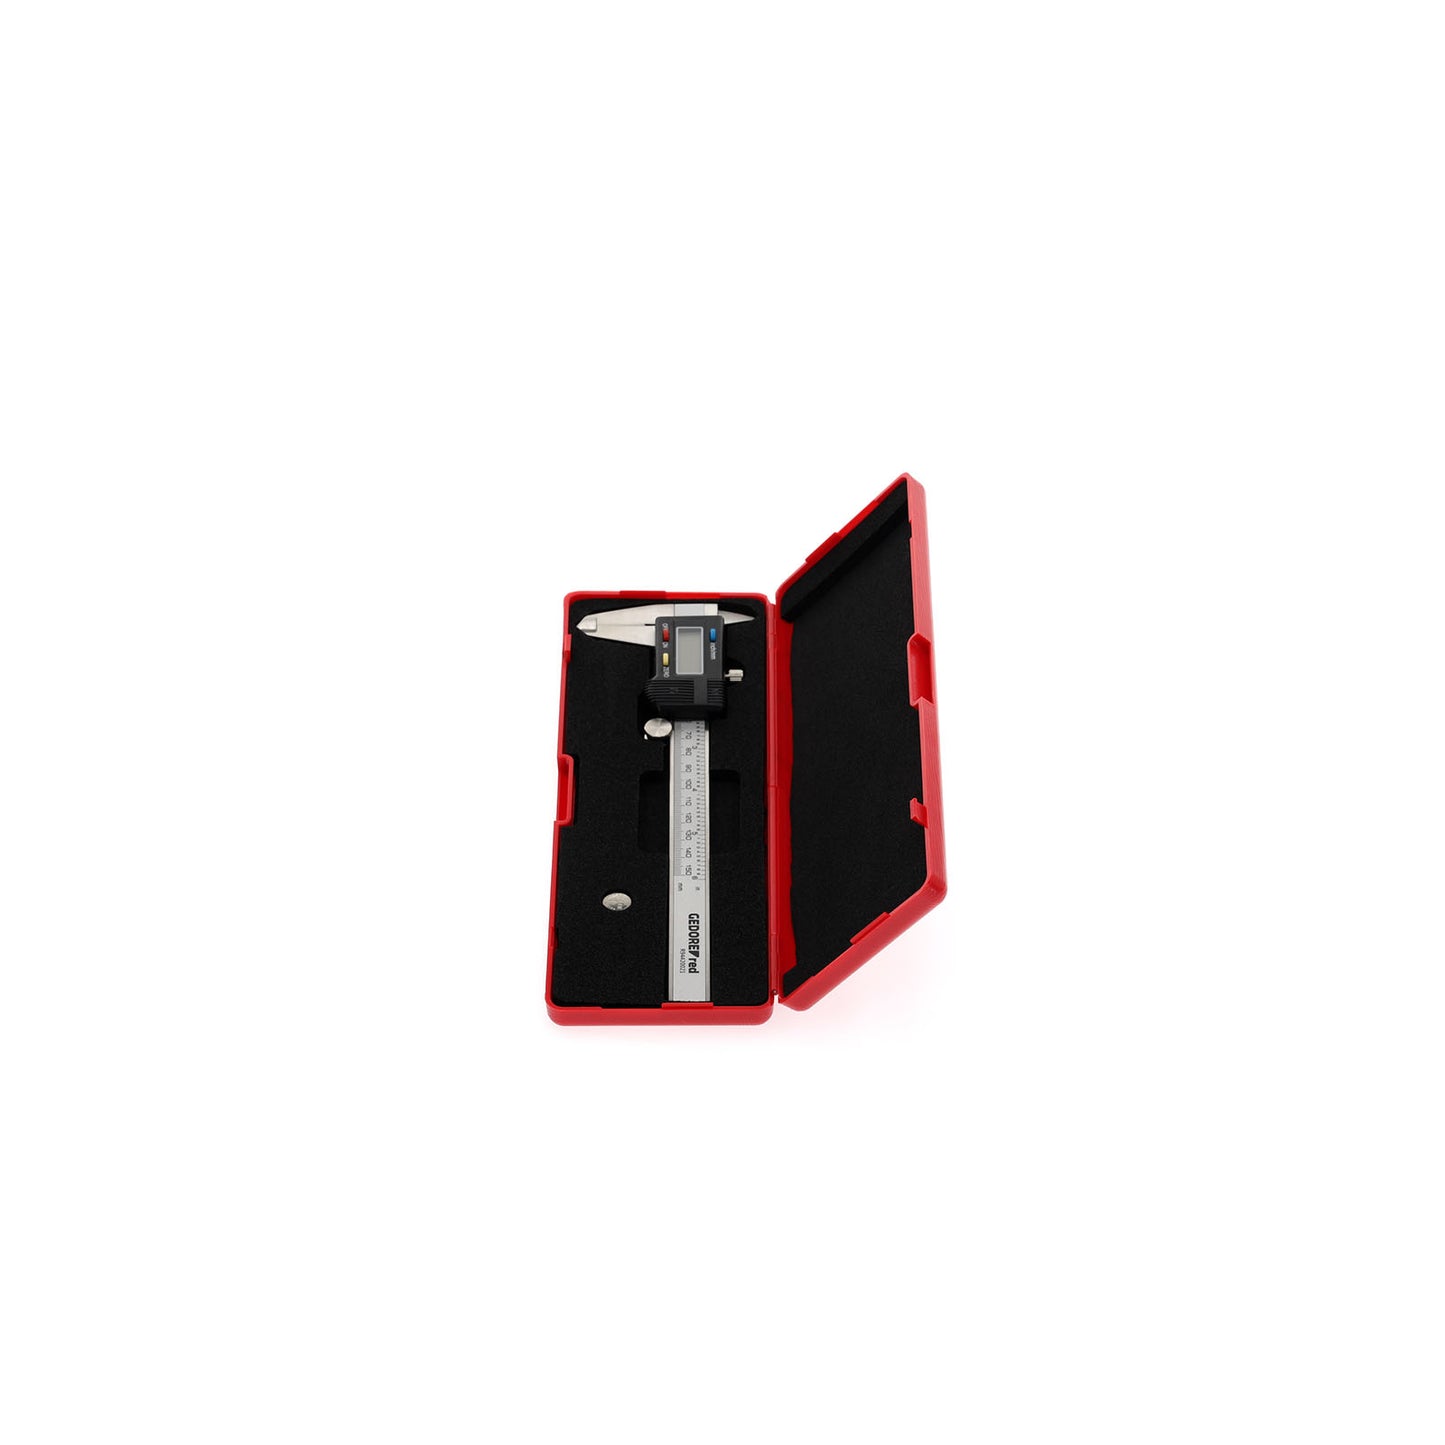 GEDORE red R94420021 - Digital caliper, 153mm (3301430)